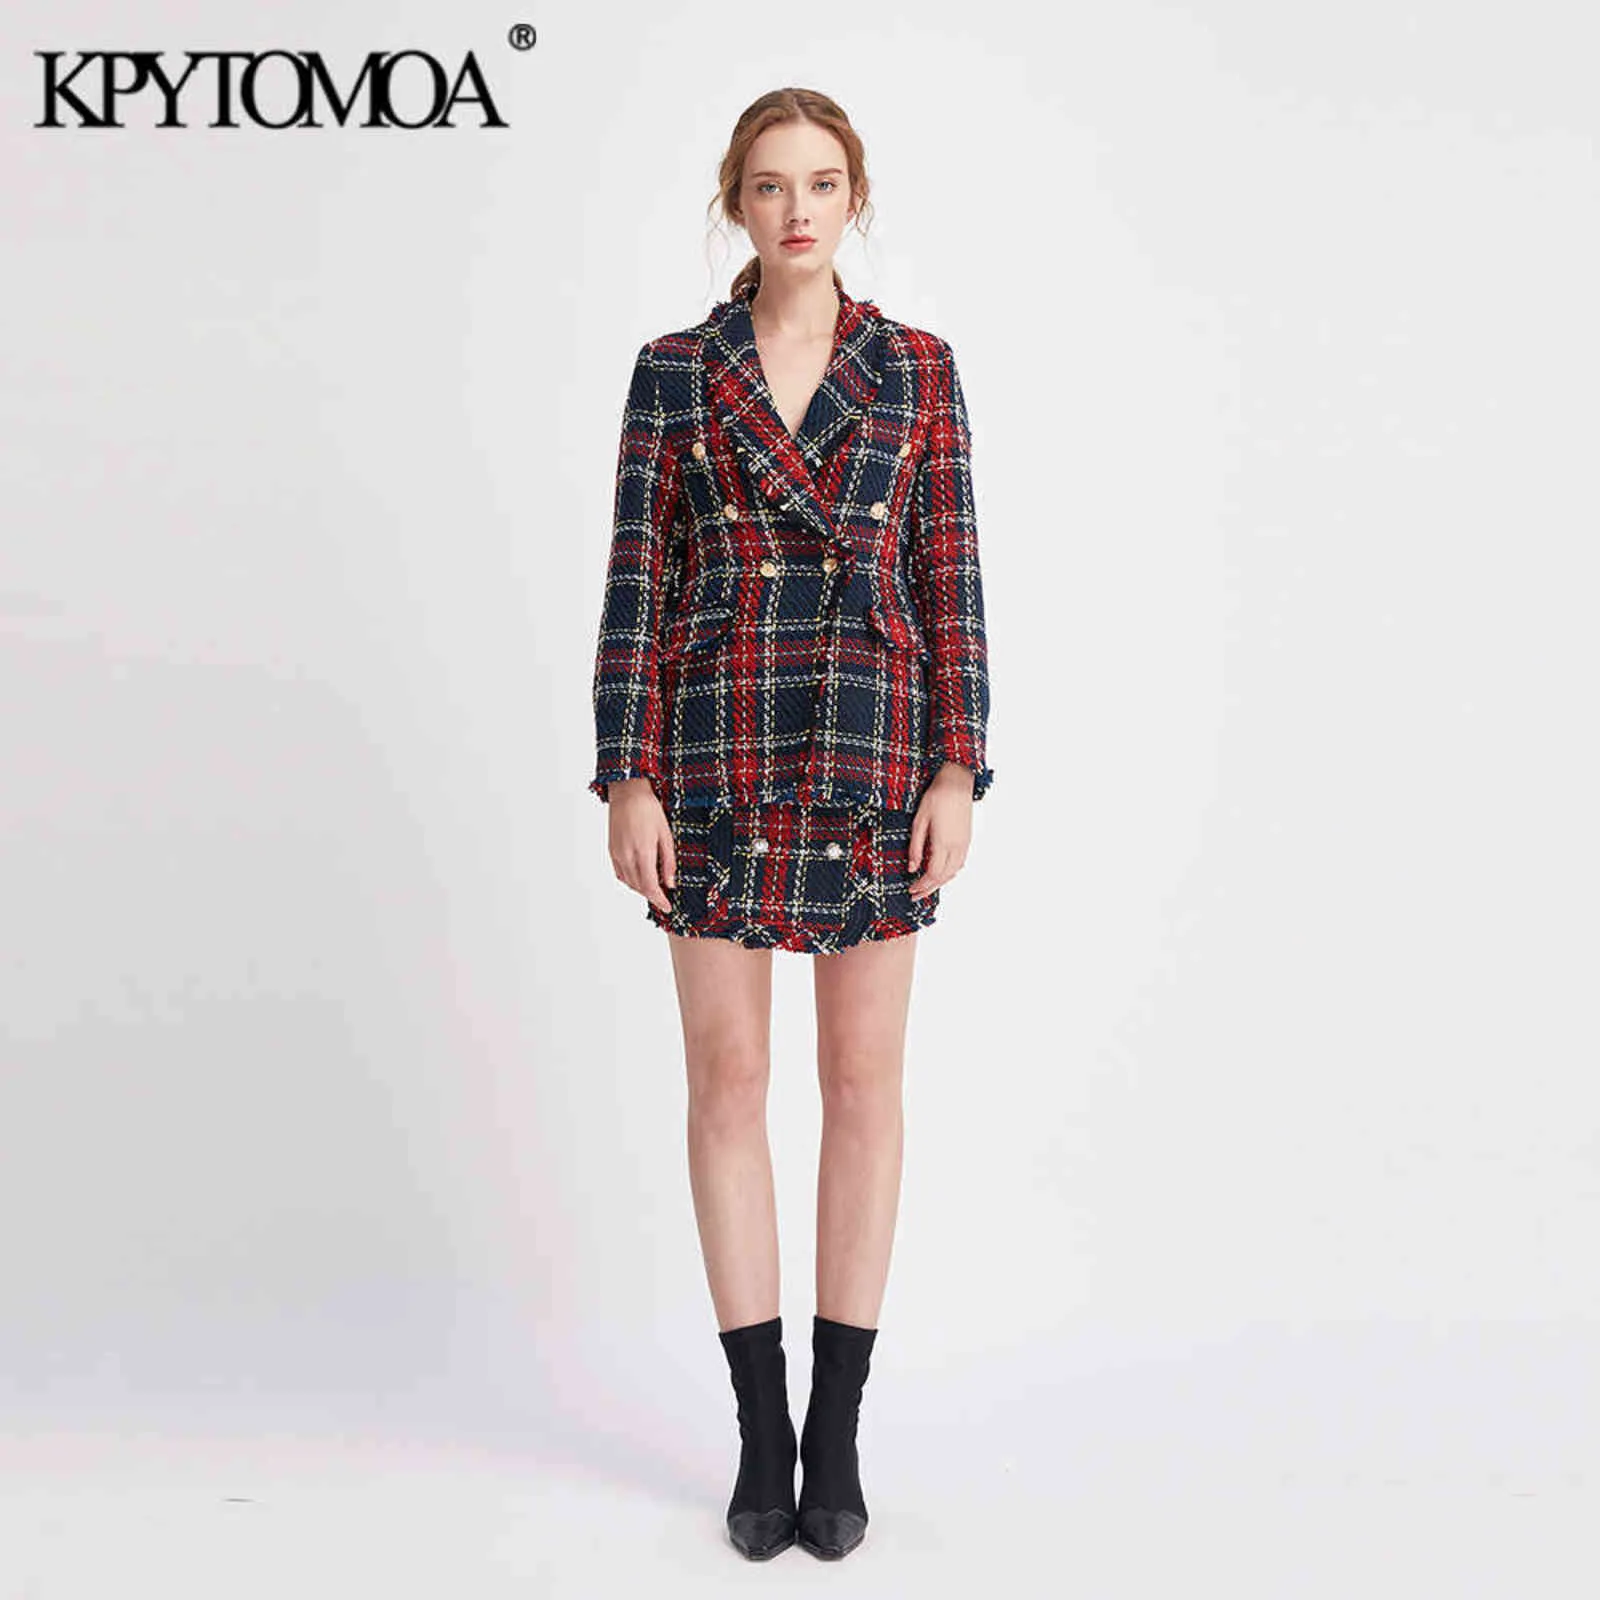 KPYTOMOA Frauen Mode Zweireiher Ausgefranste Check Tweed Blazer Mantel Vintage Lange Hülse Weibliche Oberbekleidung Chic Tops 211122